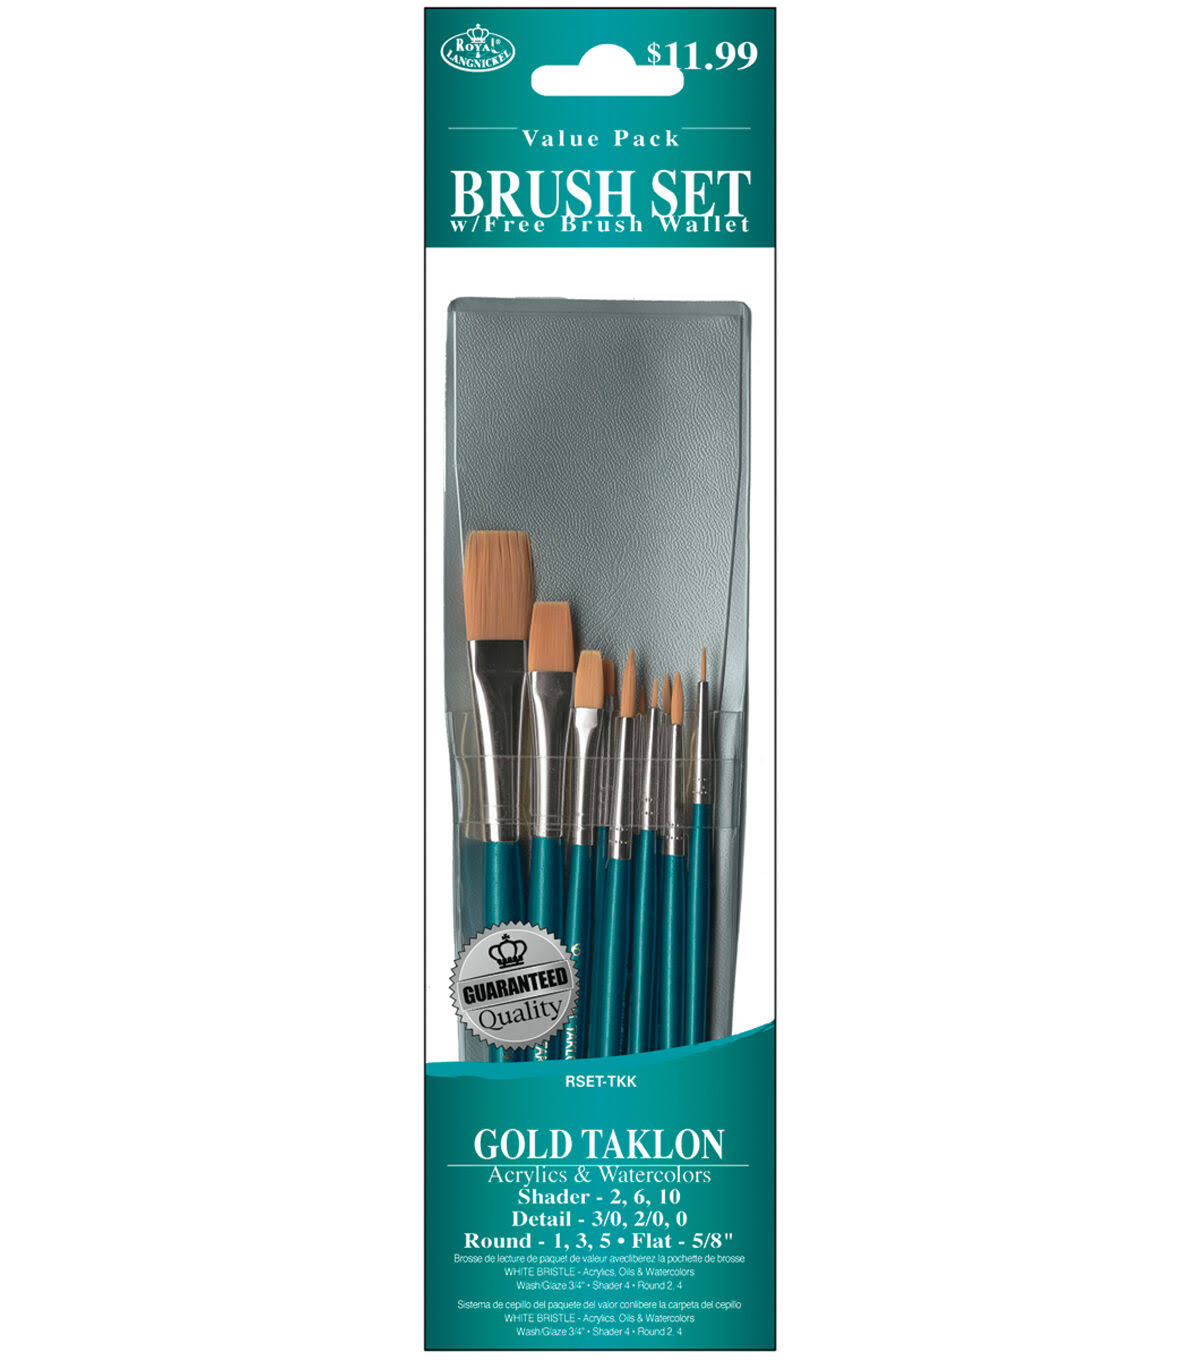 Royal Gold Taklon Brush Set - 10pk, Value Pack